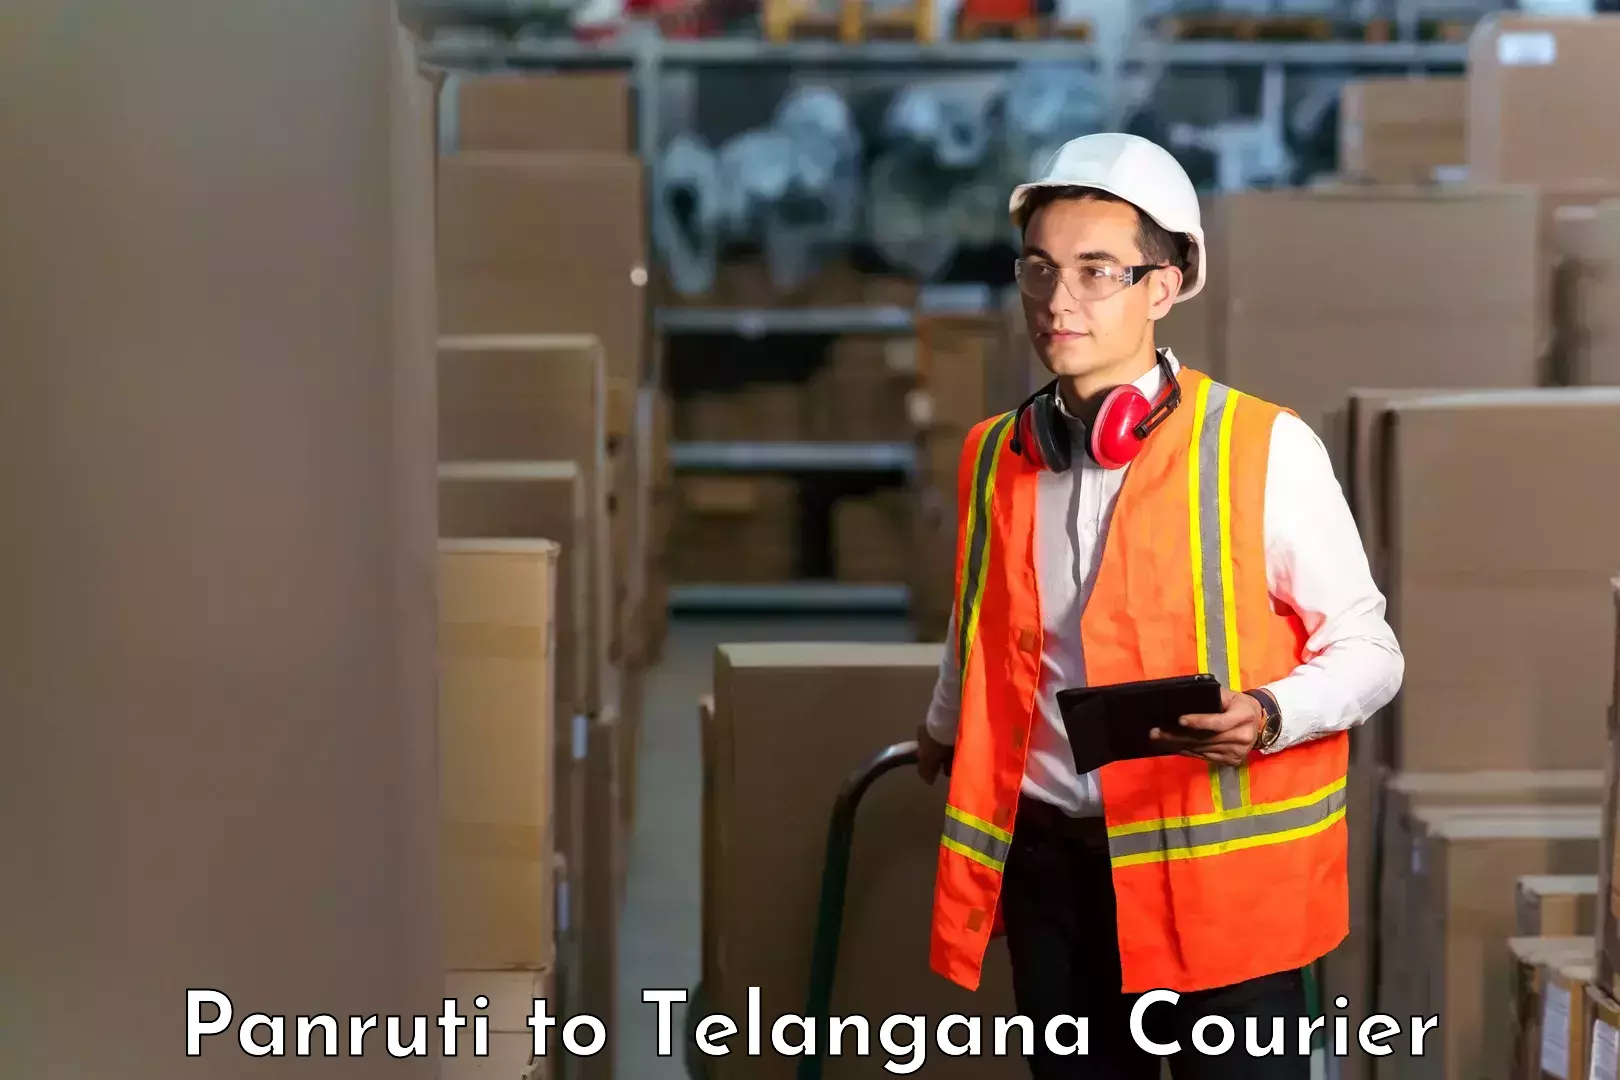 Professional courier handling Panruti to Nereducharla